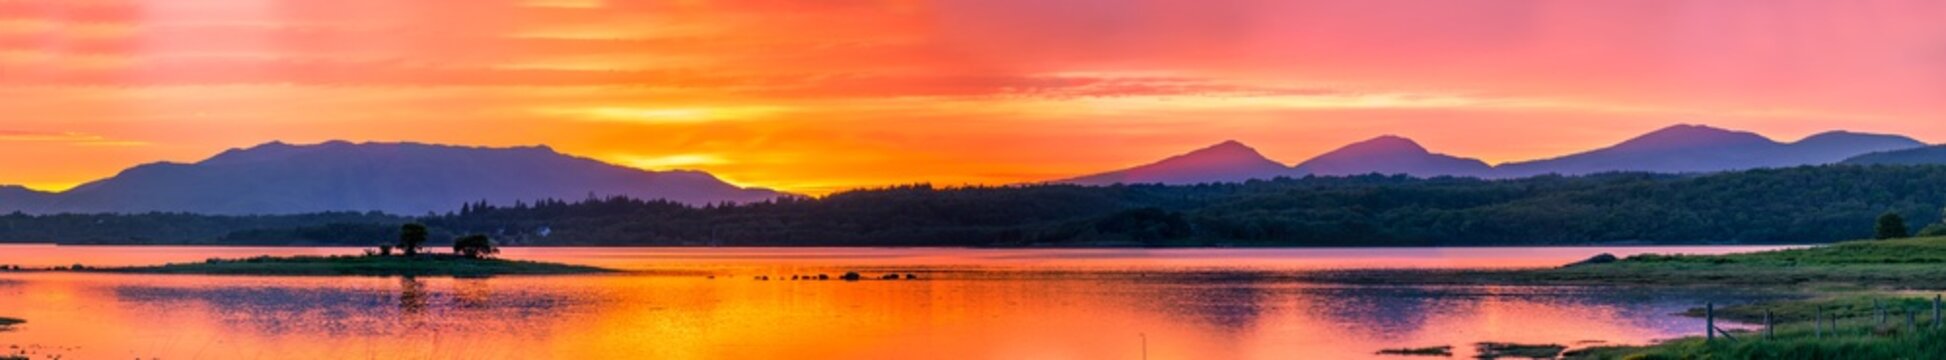 Amazing sunset at Loch Creran, Barcaldine, Argyll,Scotland